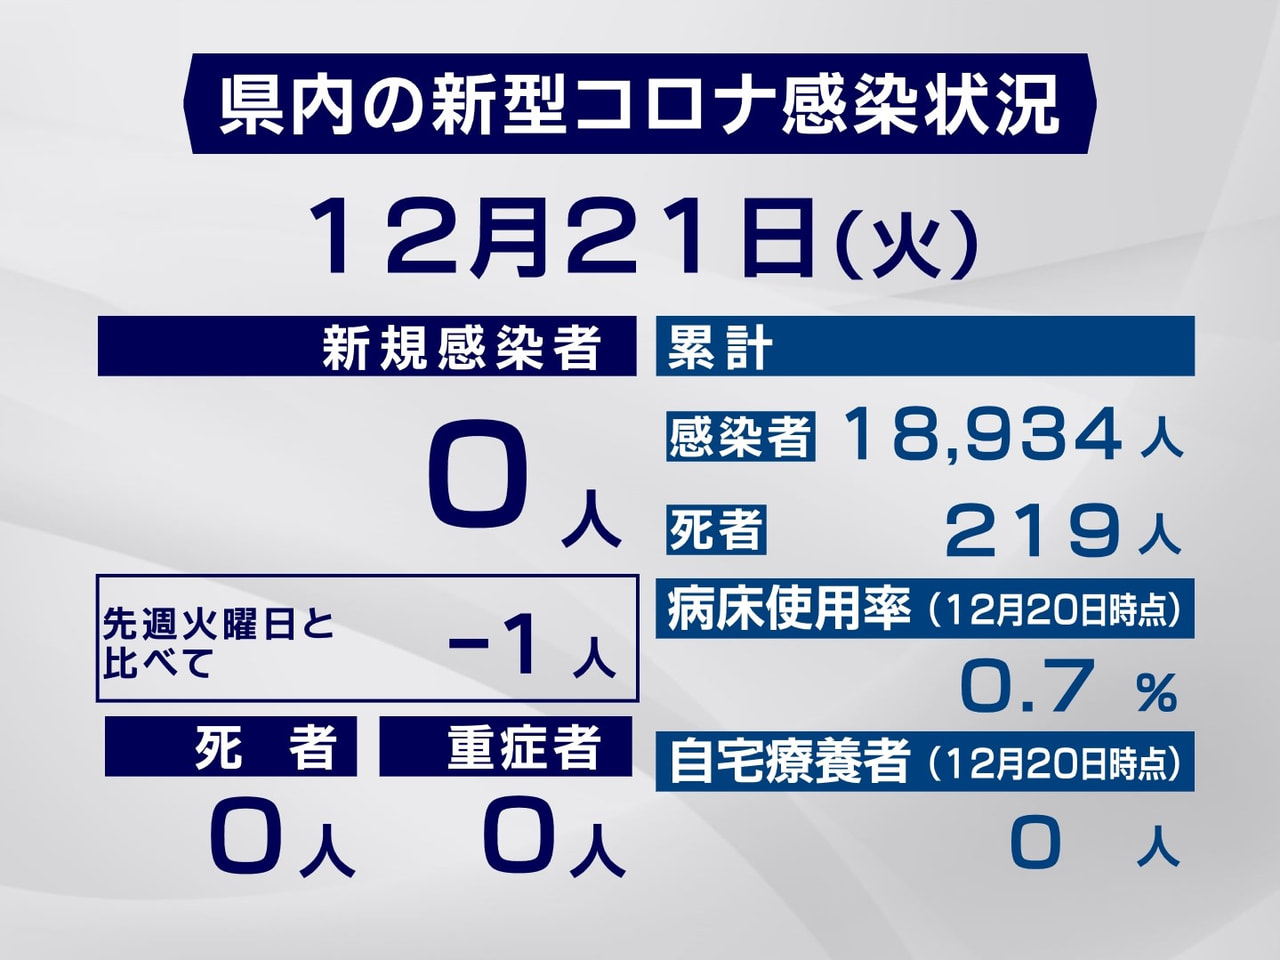 岐阜県は２１日、新型コロナウイルスの新たな感染者は確認されなかったと発表しました...